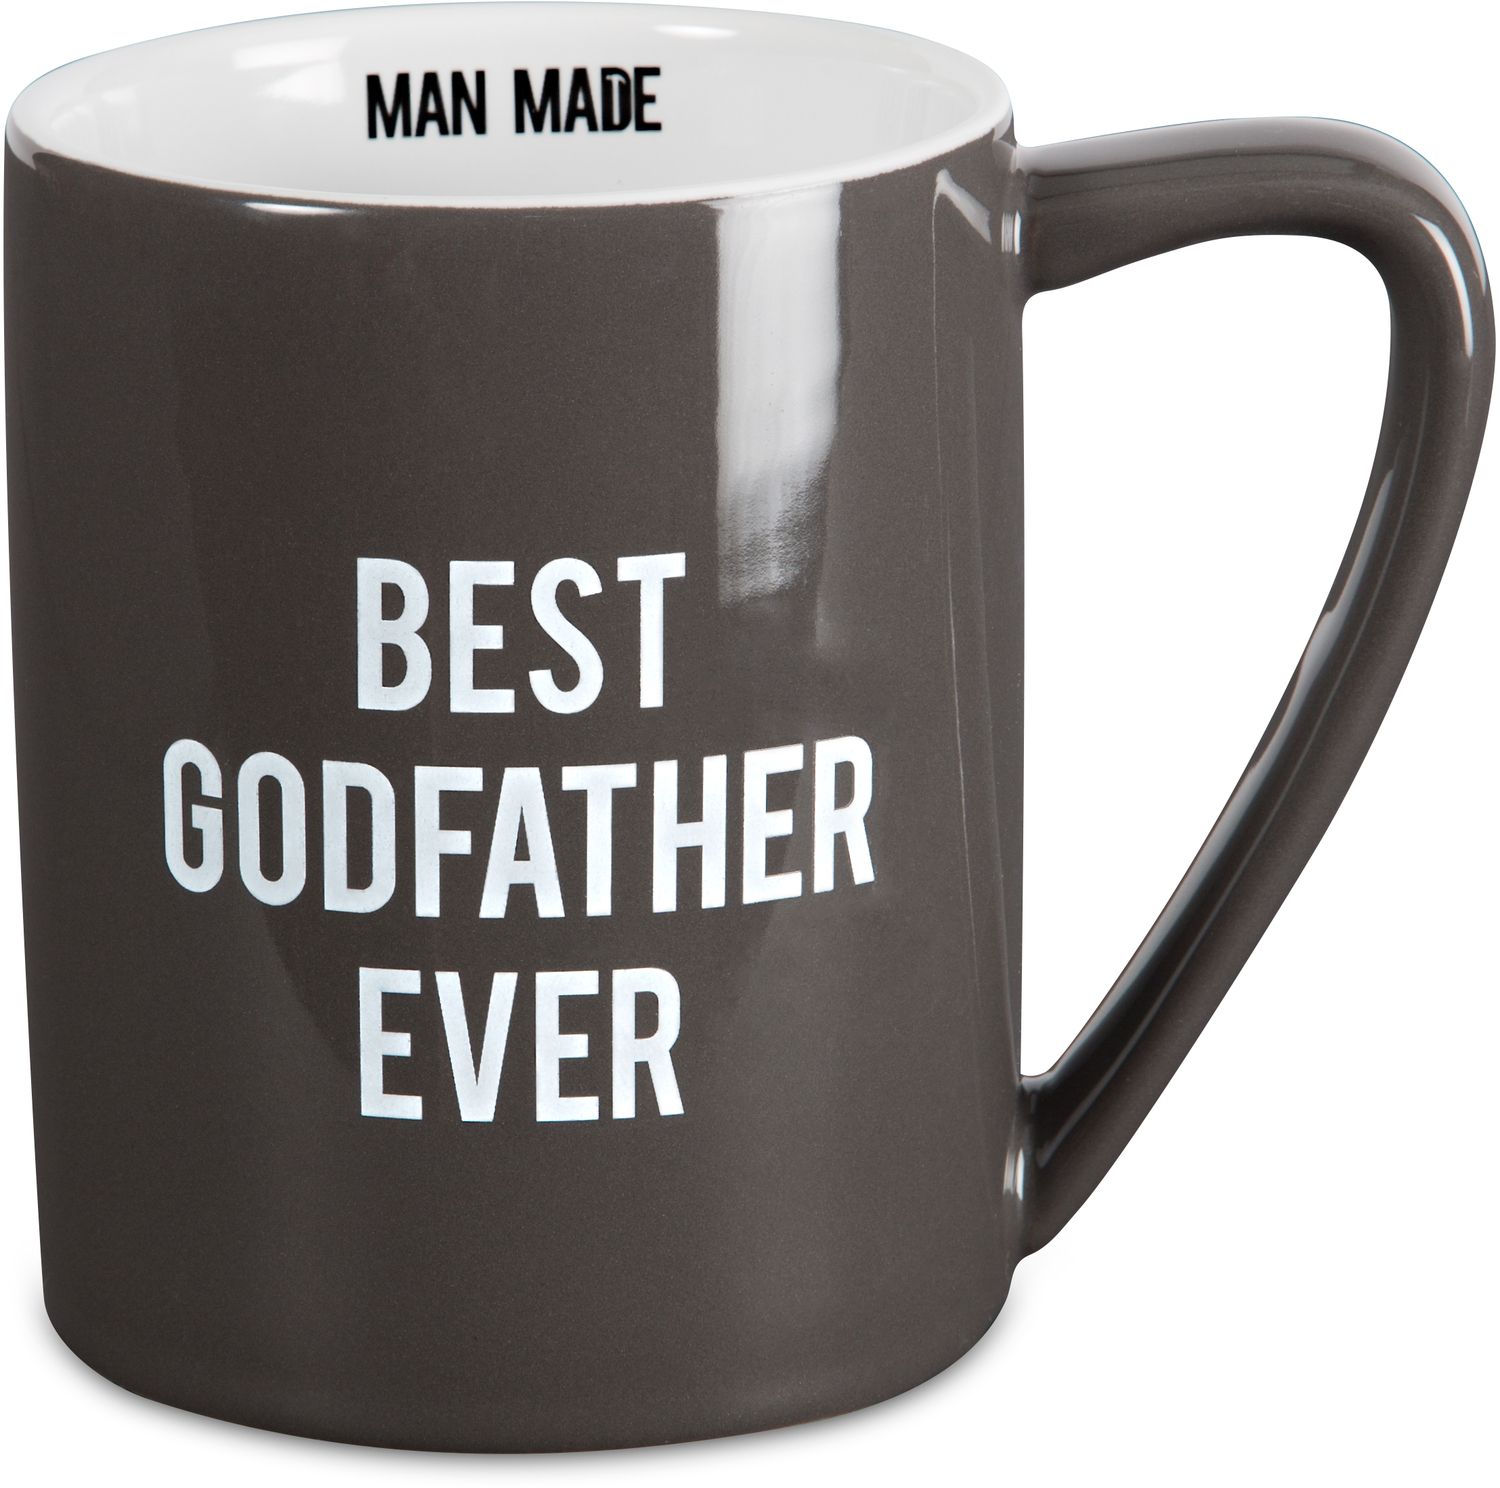 Godfather by Man Made - Godfather - 18 oz. Mug